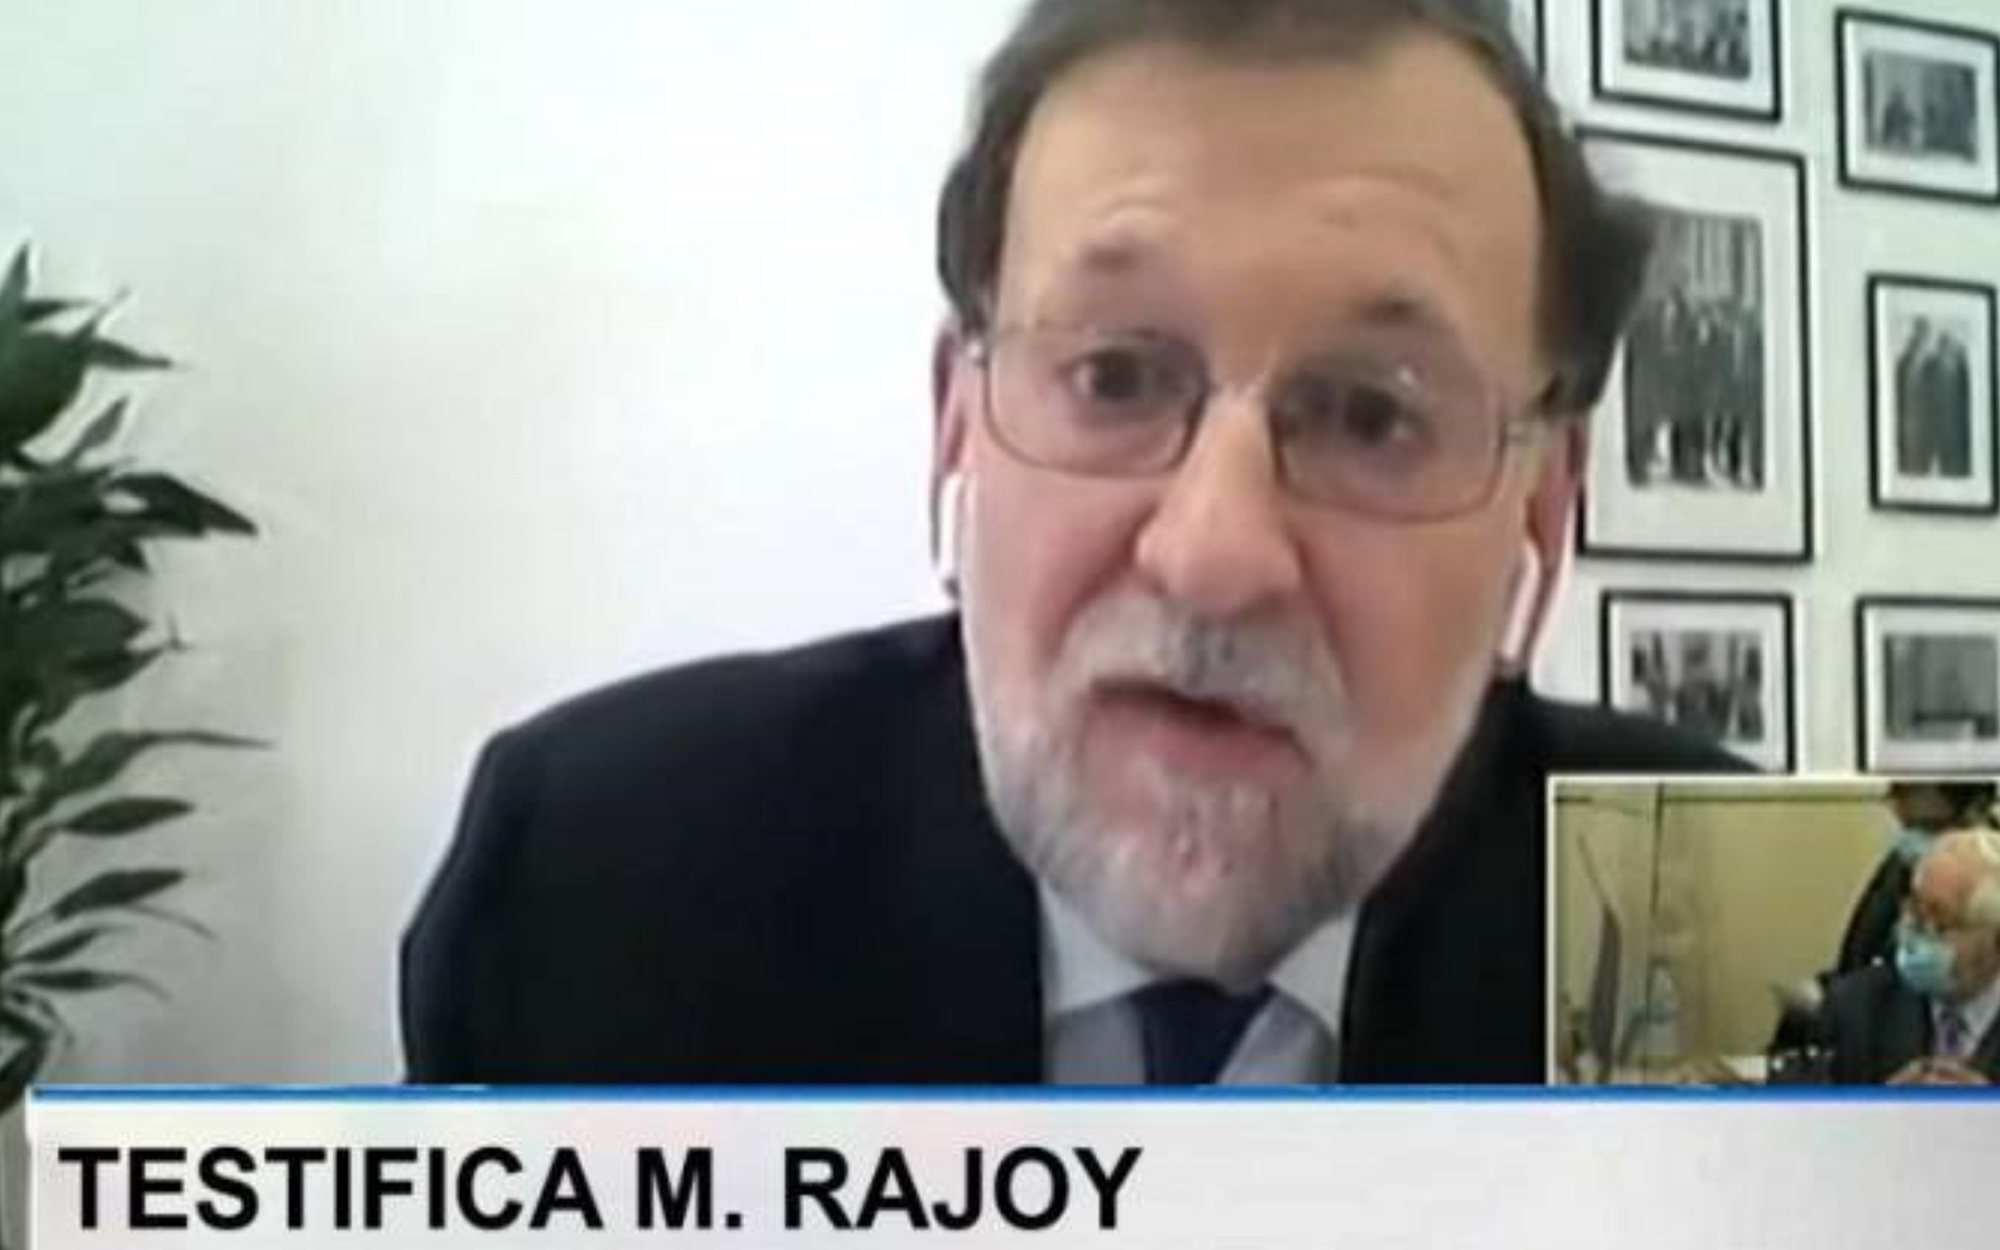 El rótulo (falso) de TVE que ha hecho arder las redes: "Testifica M. Rajoy"